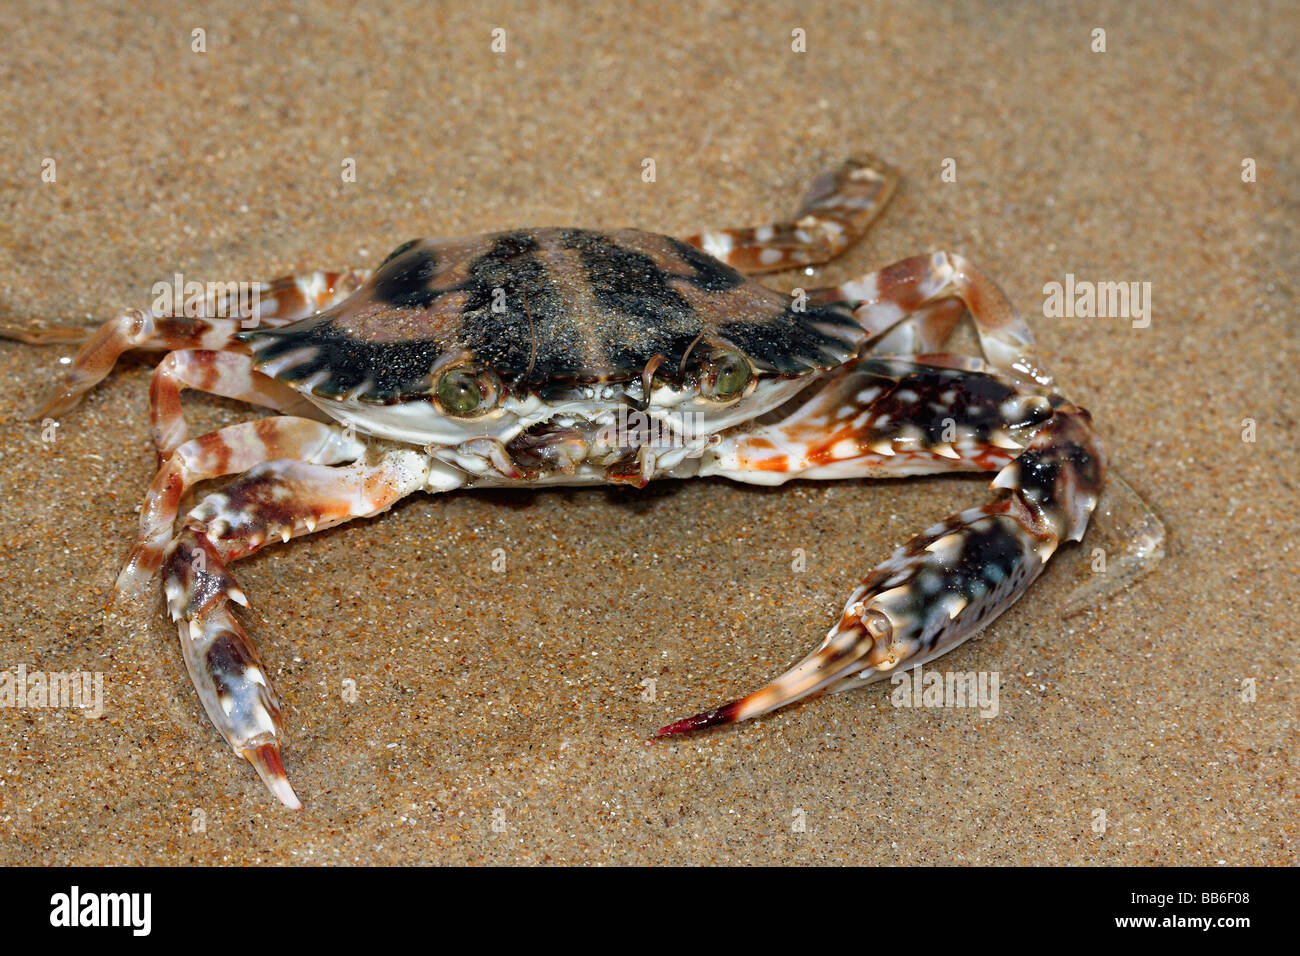 Crab (Charybdis cruciata) at Chivla Beach, Malvan. Stock Photo